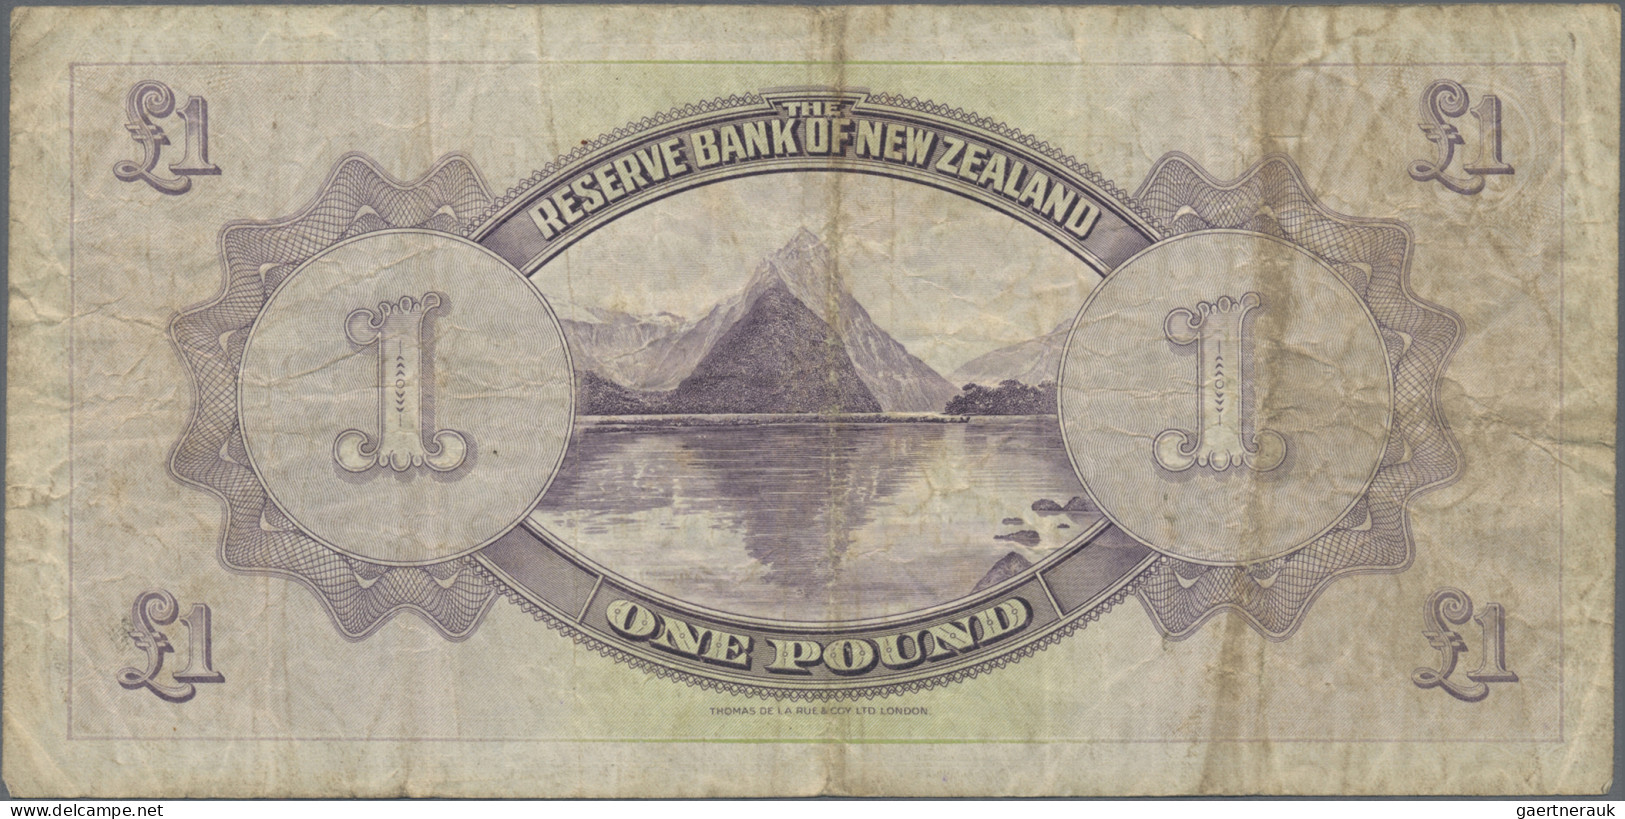 New Zealand: The Reserve Bank Of New Zealand, 1 Pound 1934, P.155, Still Nice Wi - Nouvelle-Zélande